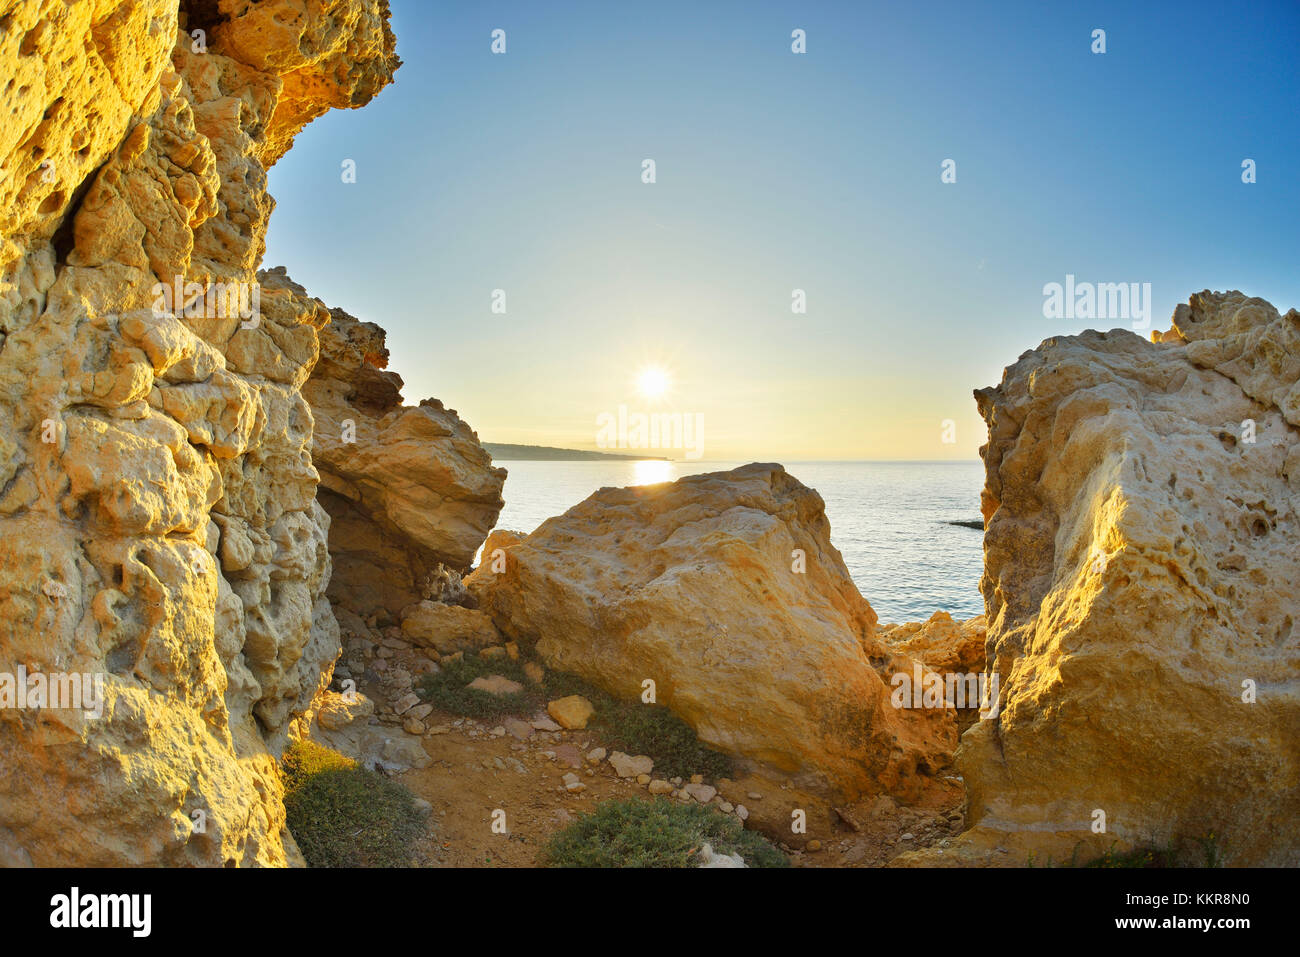 Costa rocciosa con Sun in estate, la couronne, Martigues, cote bleue, mare mediterraneo, provence alpes Cote d Azur, Bouches du Rhone, Francia Foto Stock